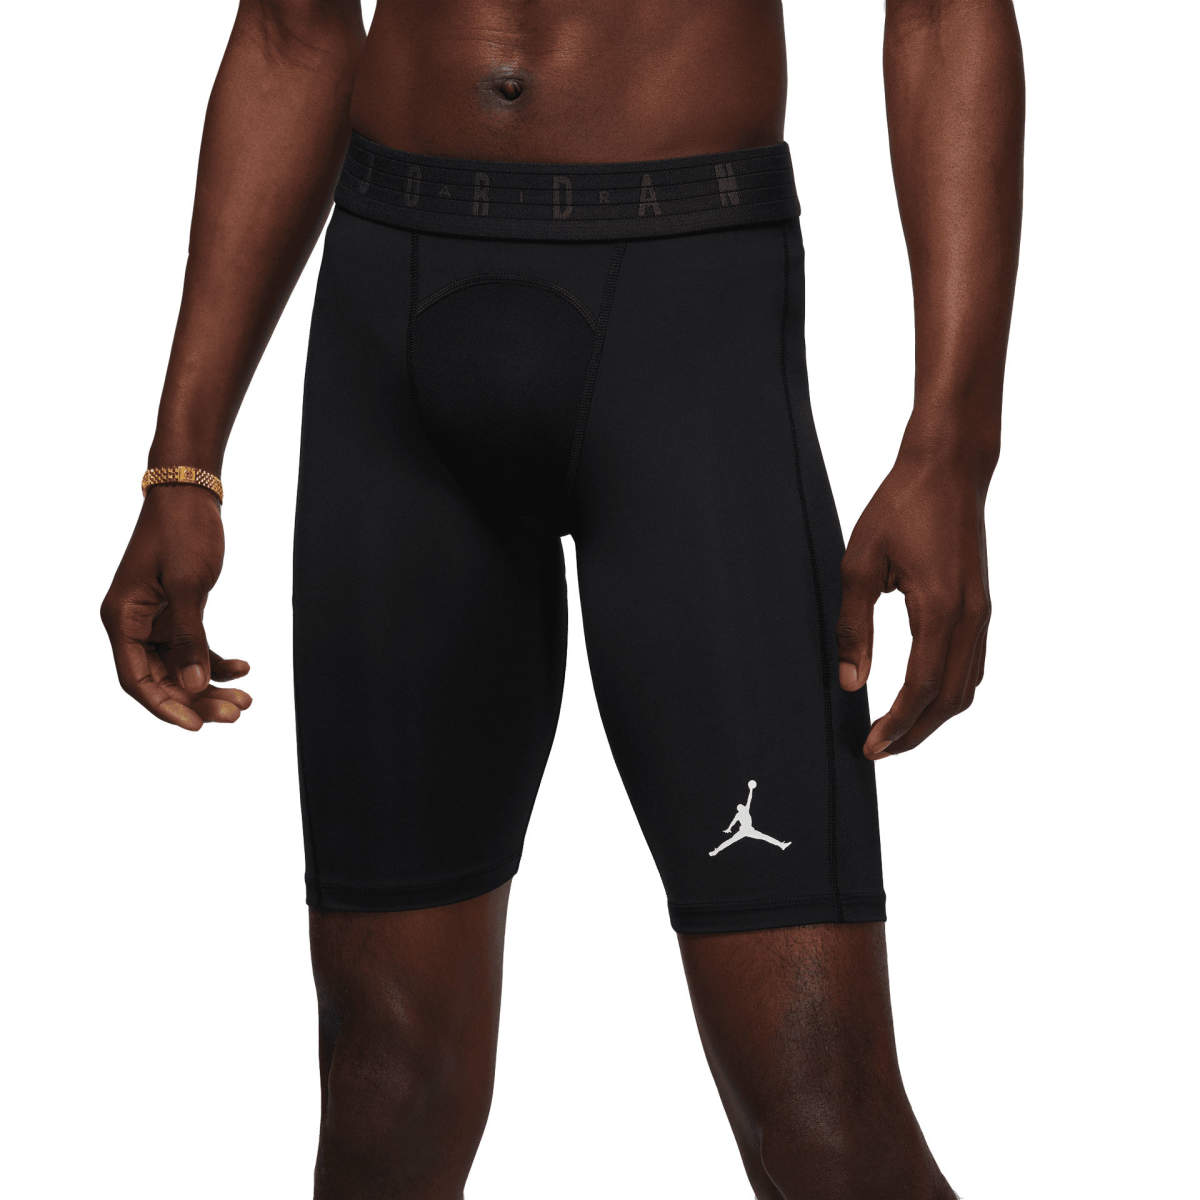 Endurance Generator Compression Shorts For Men - Black